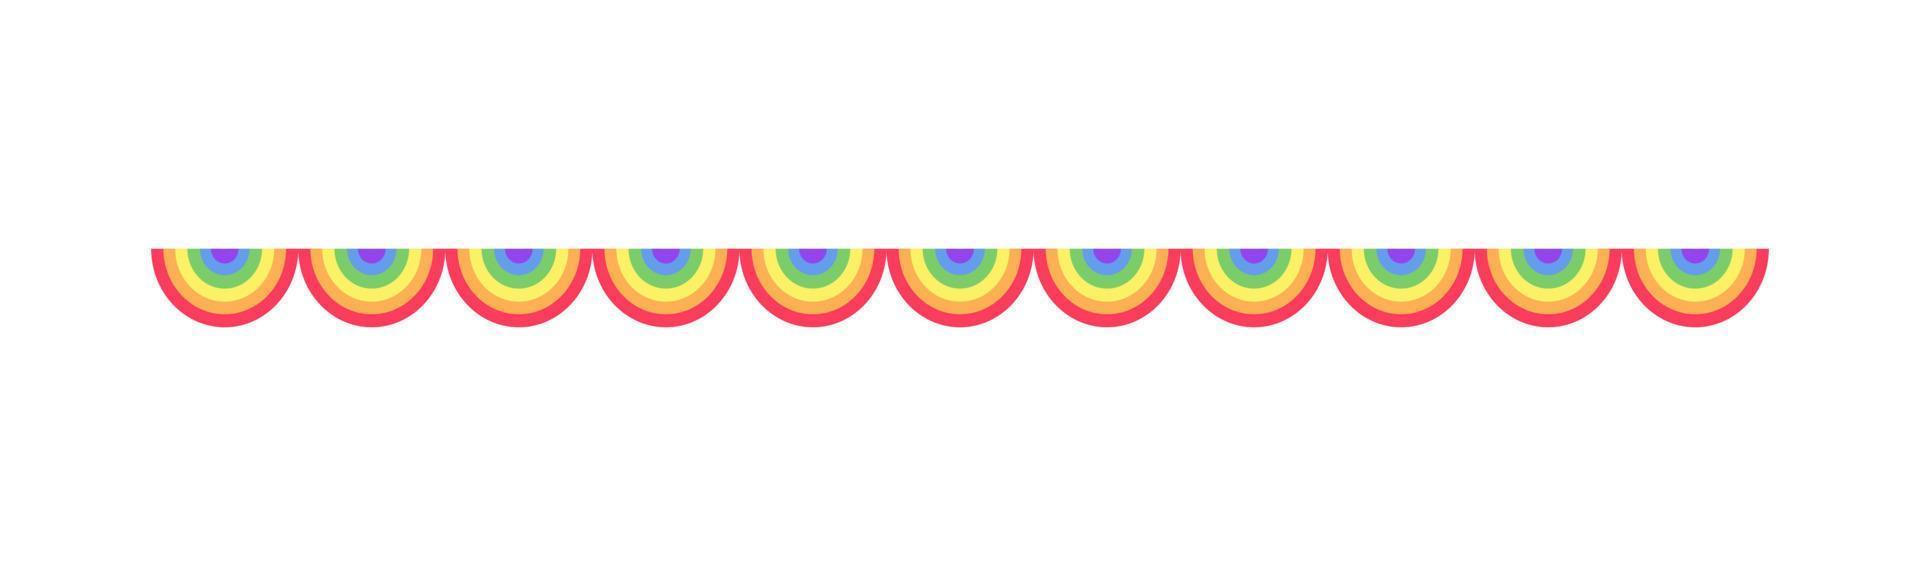 arcobaleno a smerlo ghirlanda divisore semplice vettore illustrazione clipart